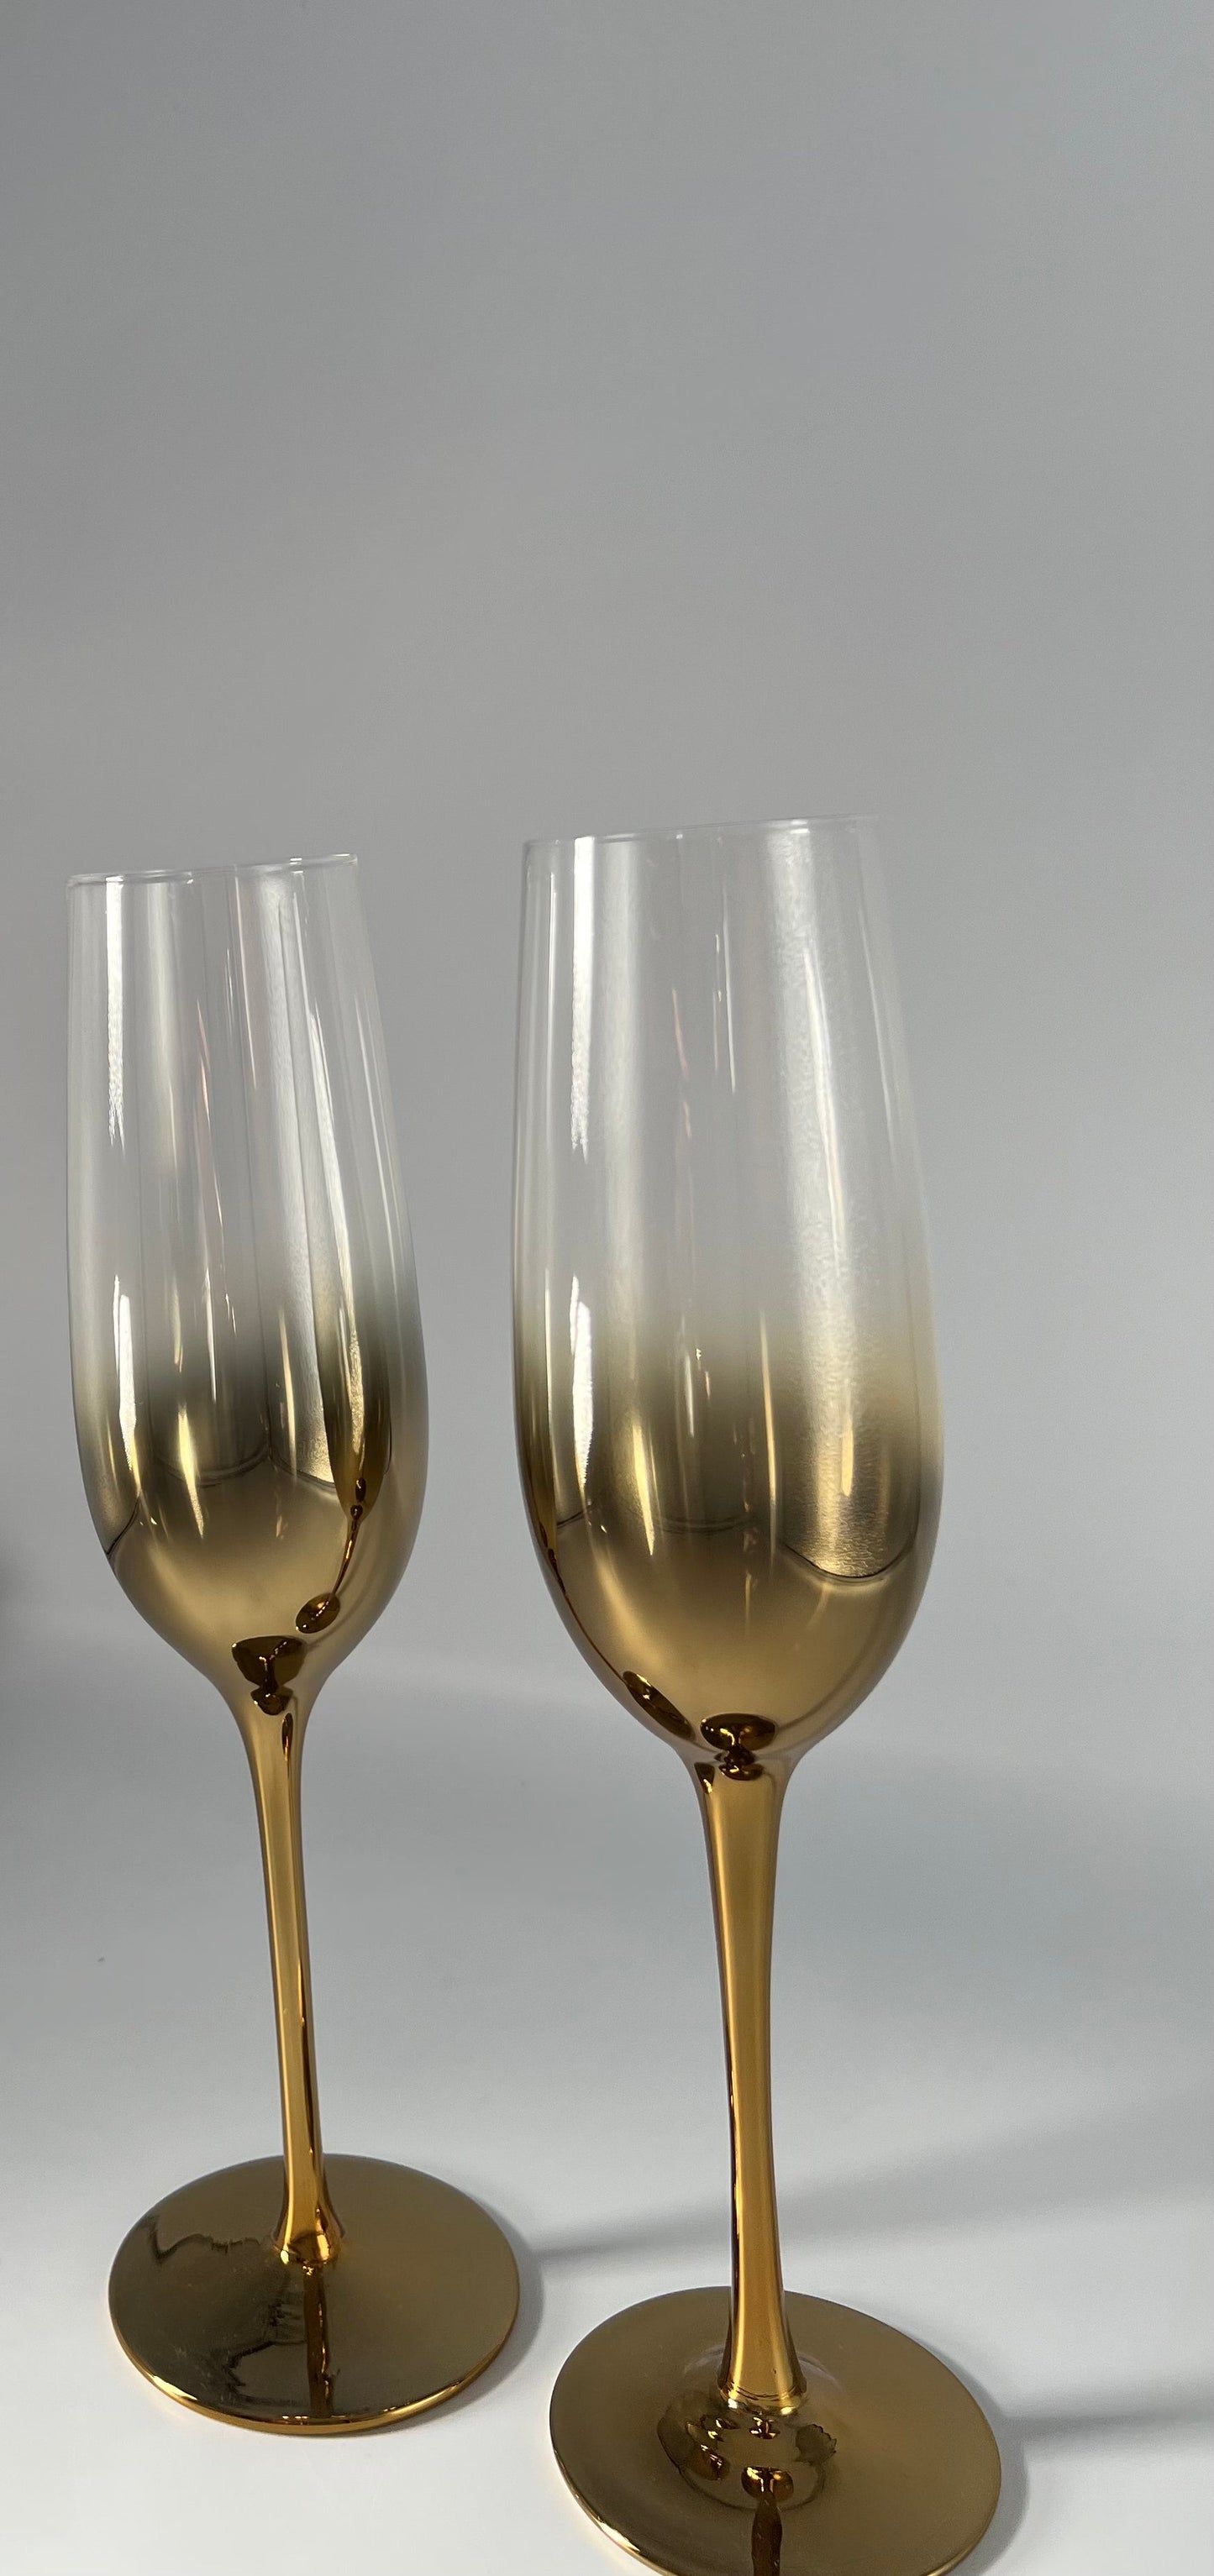 LADY - Lot de 2 grandes flûtes à champagne or B&Inside 